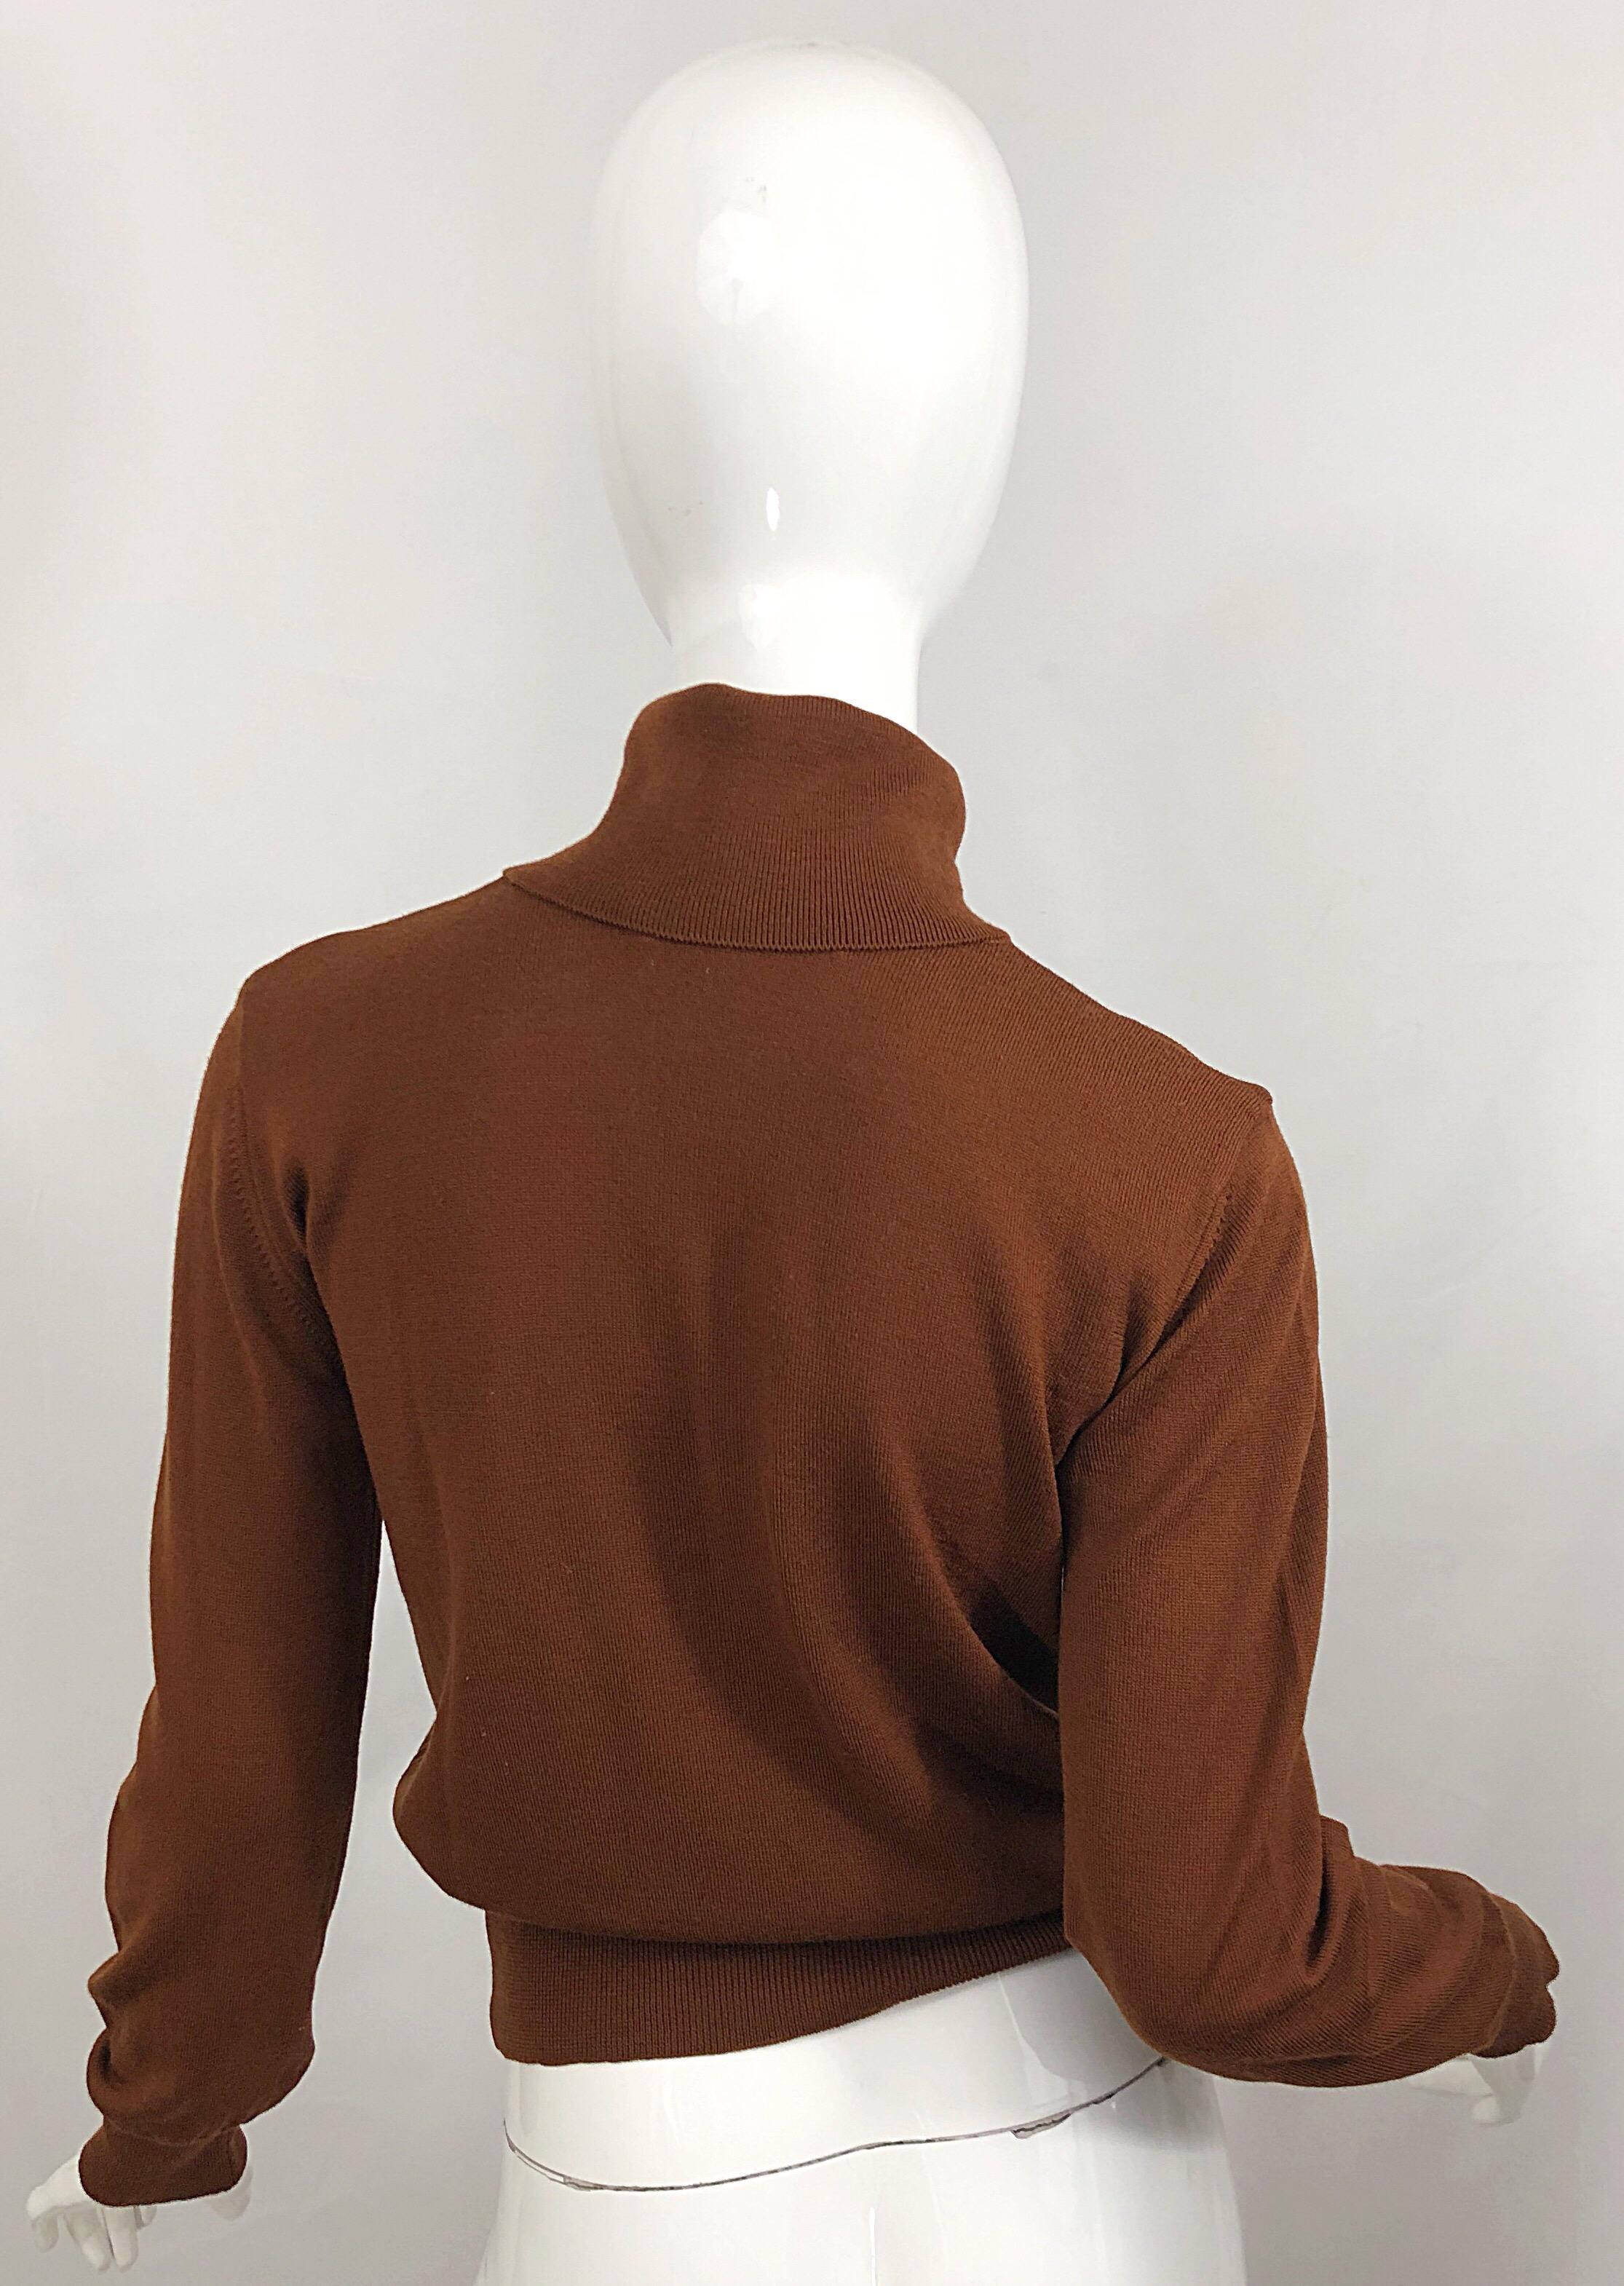 brown sweater vintage